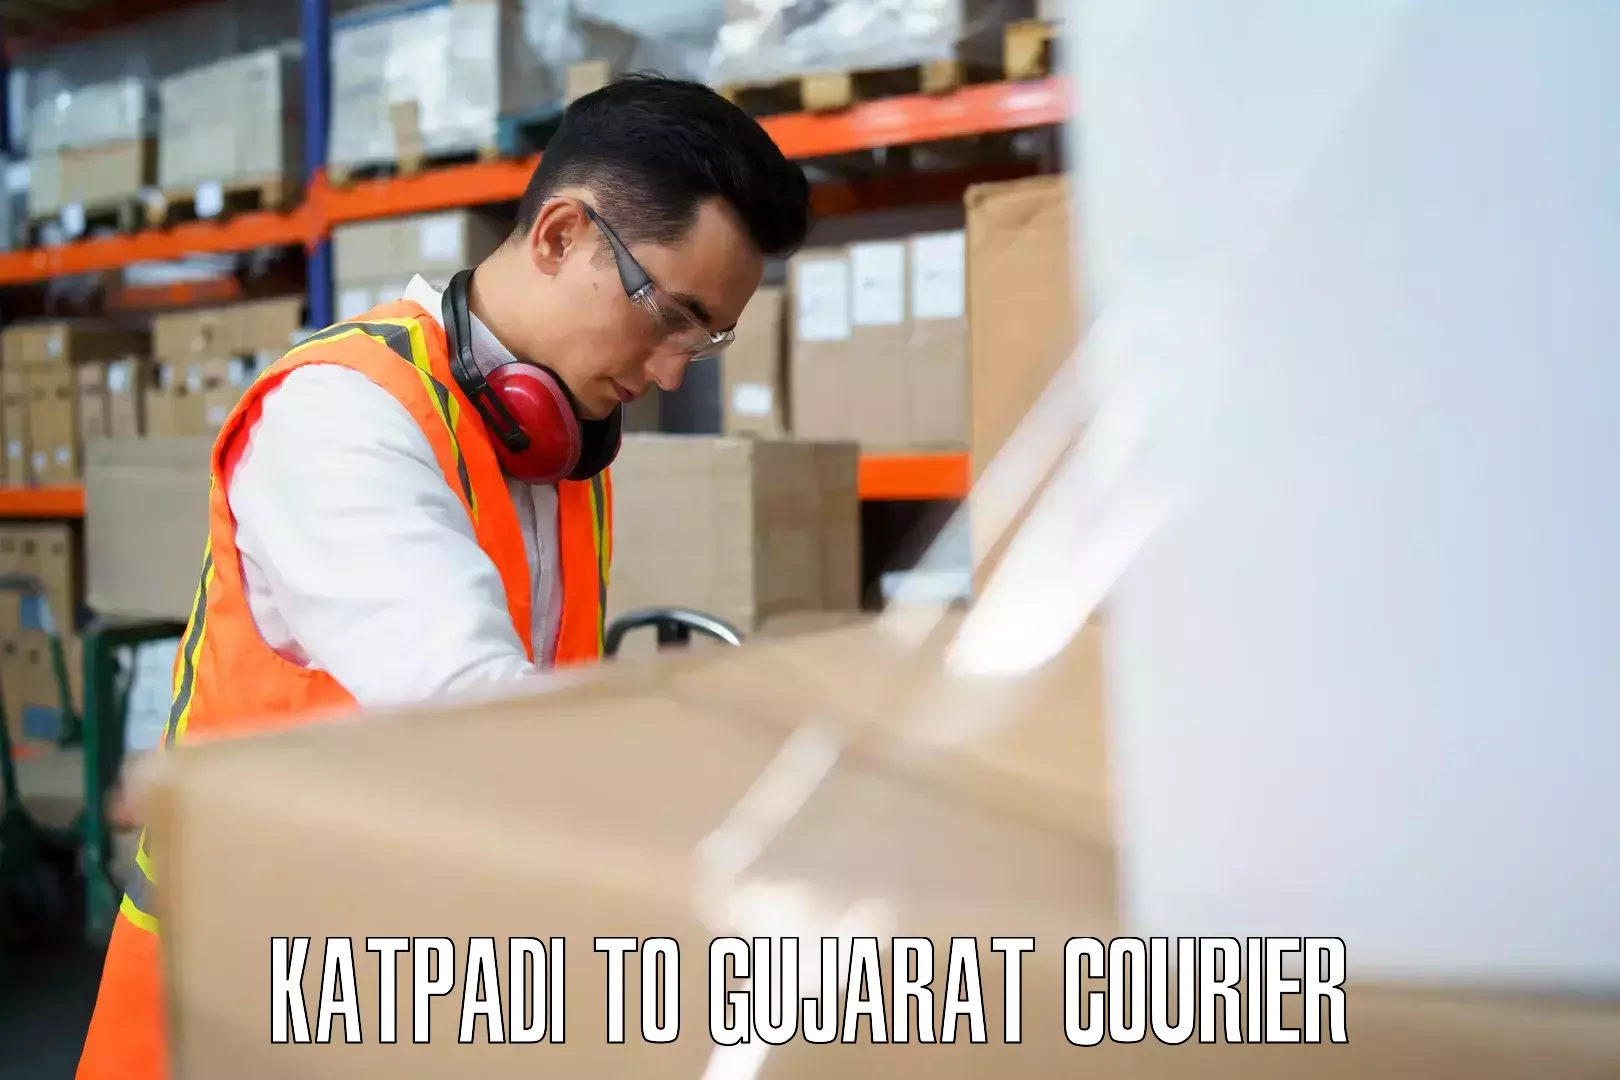 Baggage shipping calculator in Katpadi to Matar